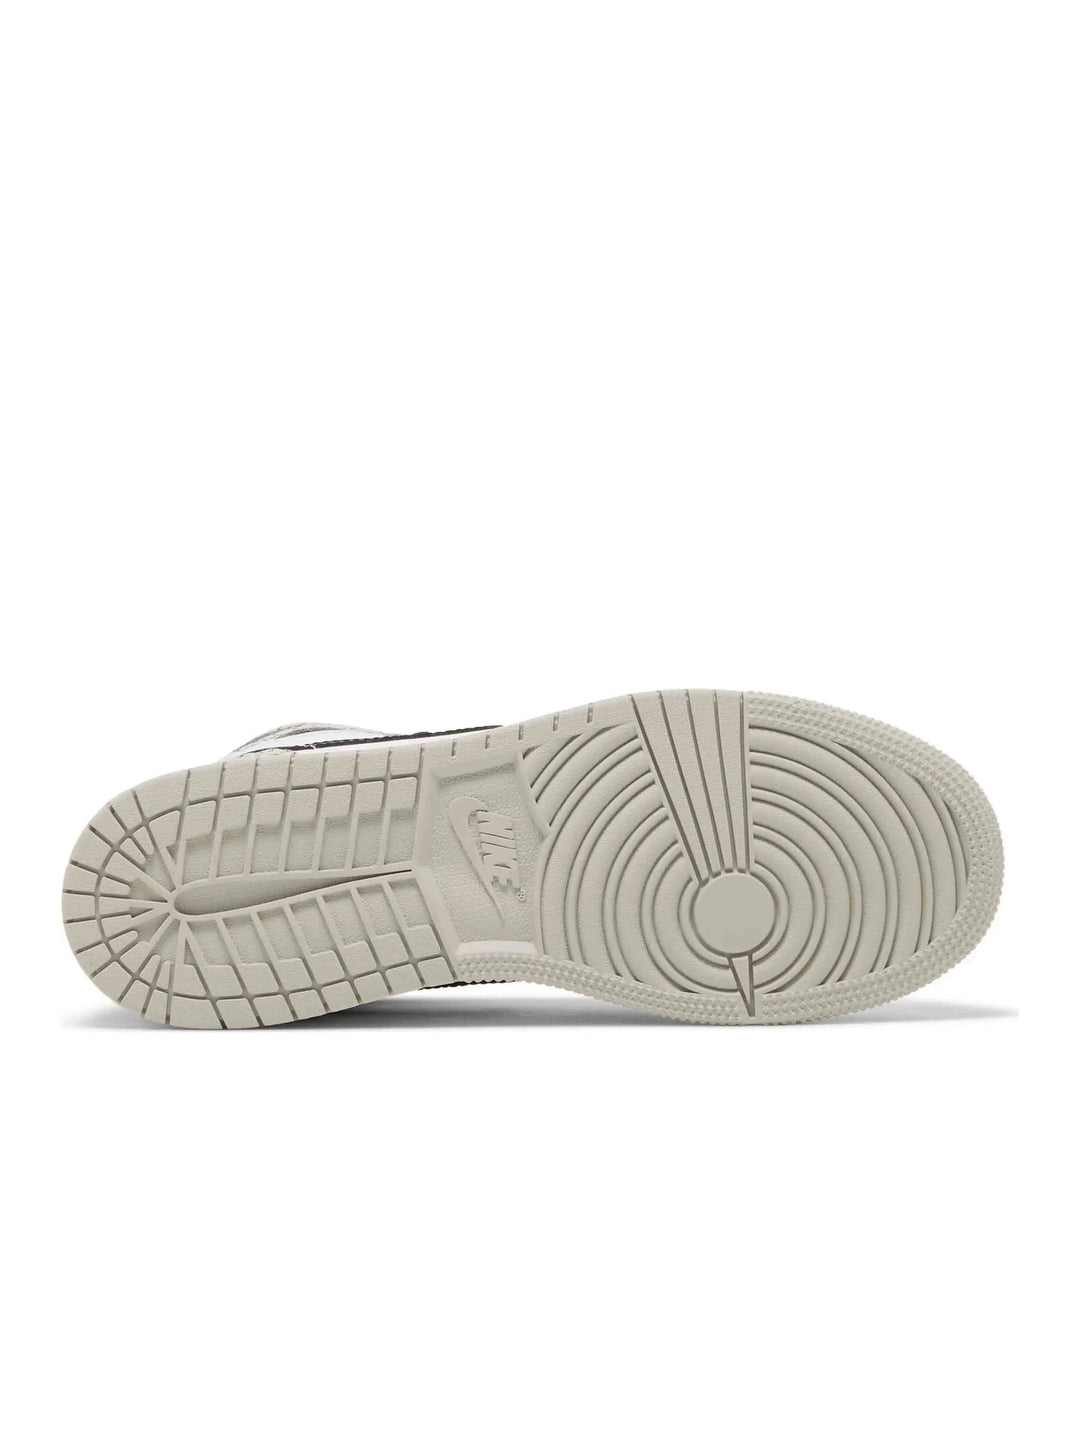 Nike Air Jordan 1 Retro High OG White Cement (GS) Prior